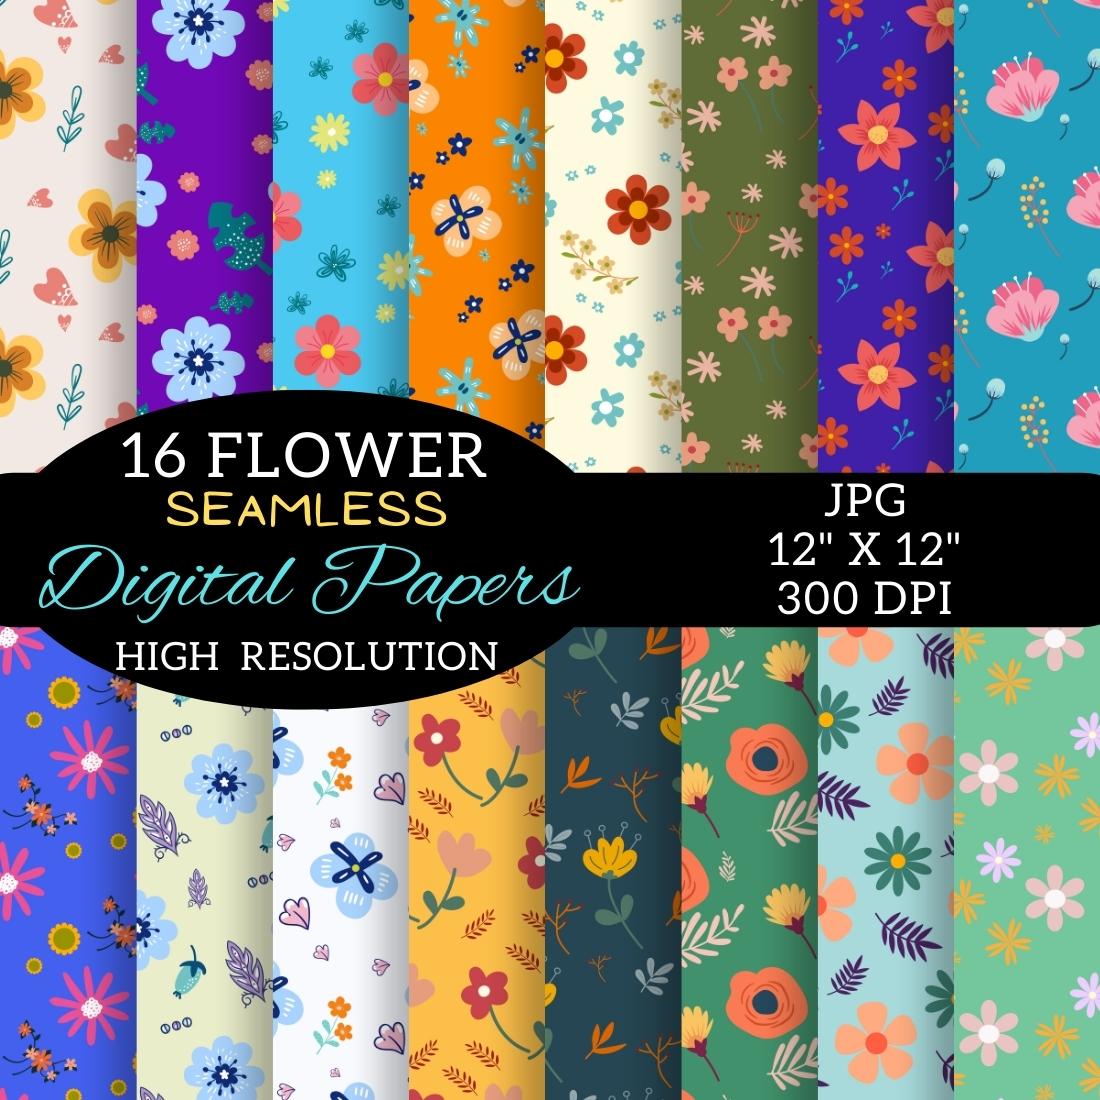 Flower Digital Paper Patterns Design cover image.